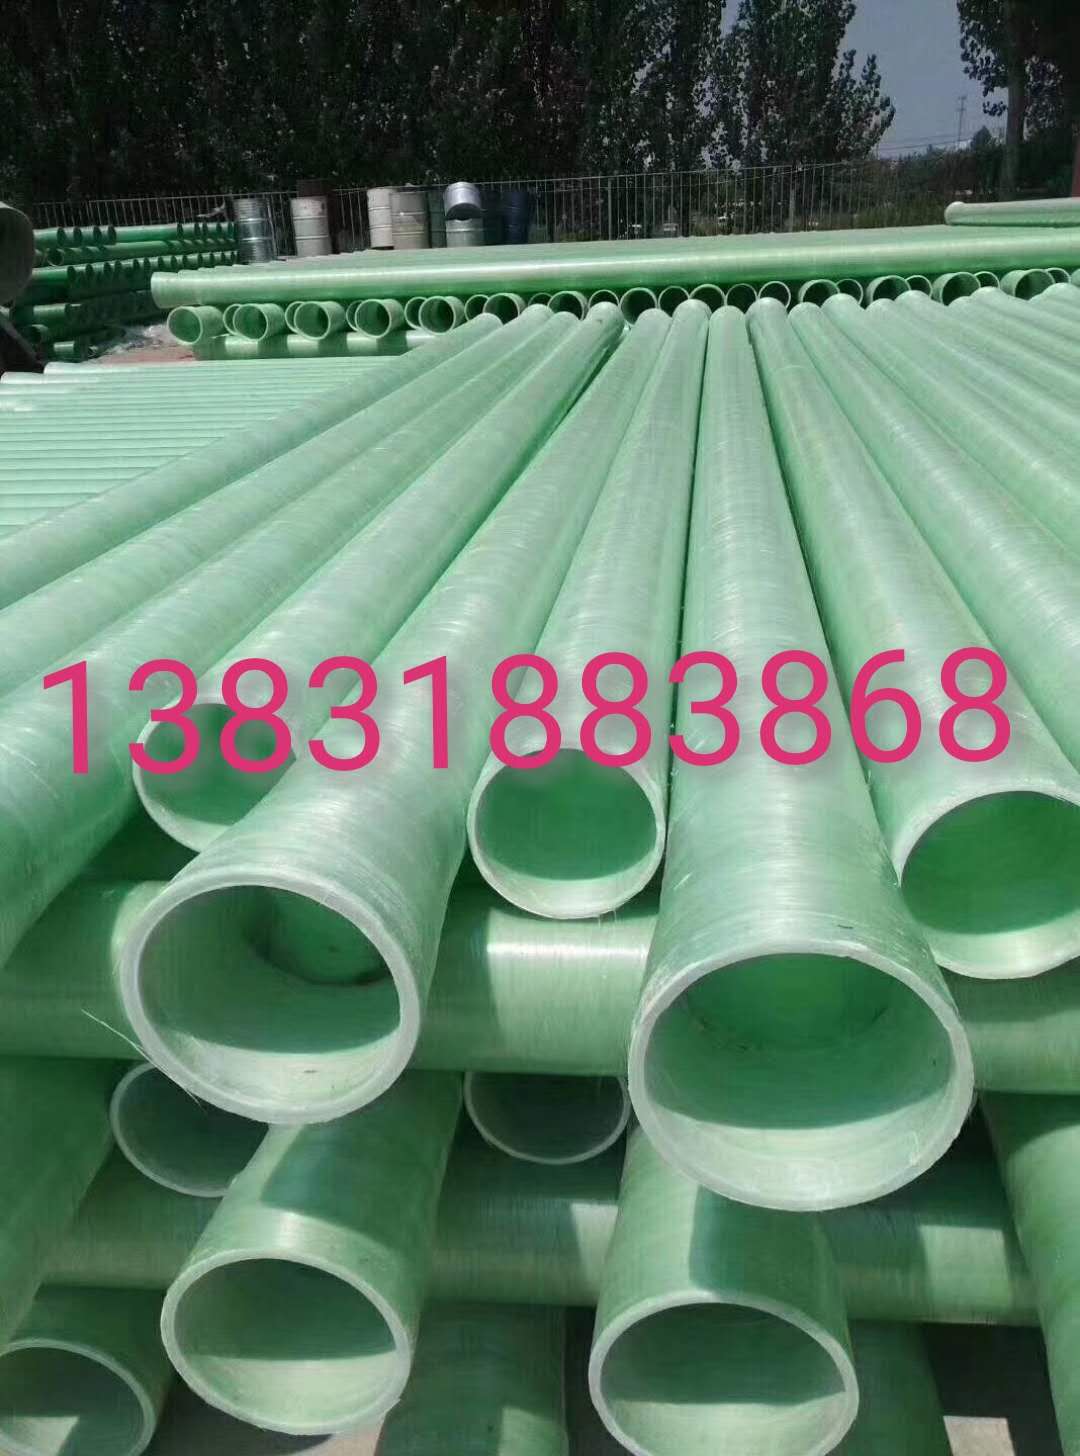 天津电缆管厂家 天津电缆管生产厂家鑫海顺玻璃钢电缆管图片